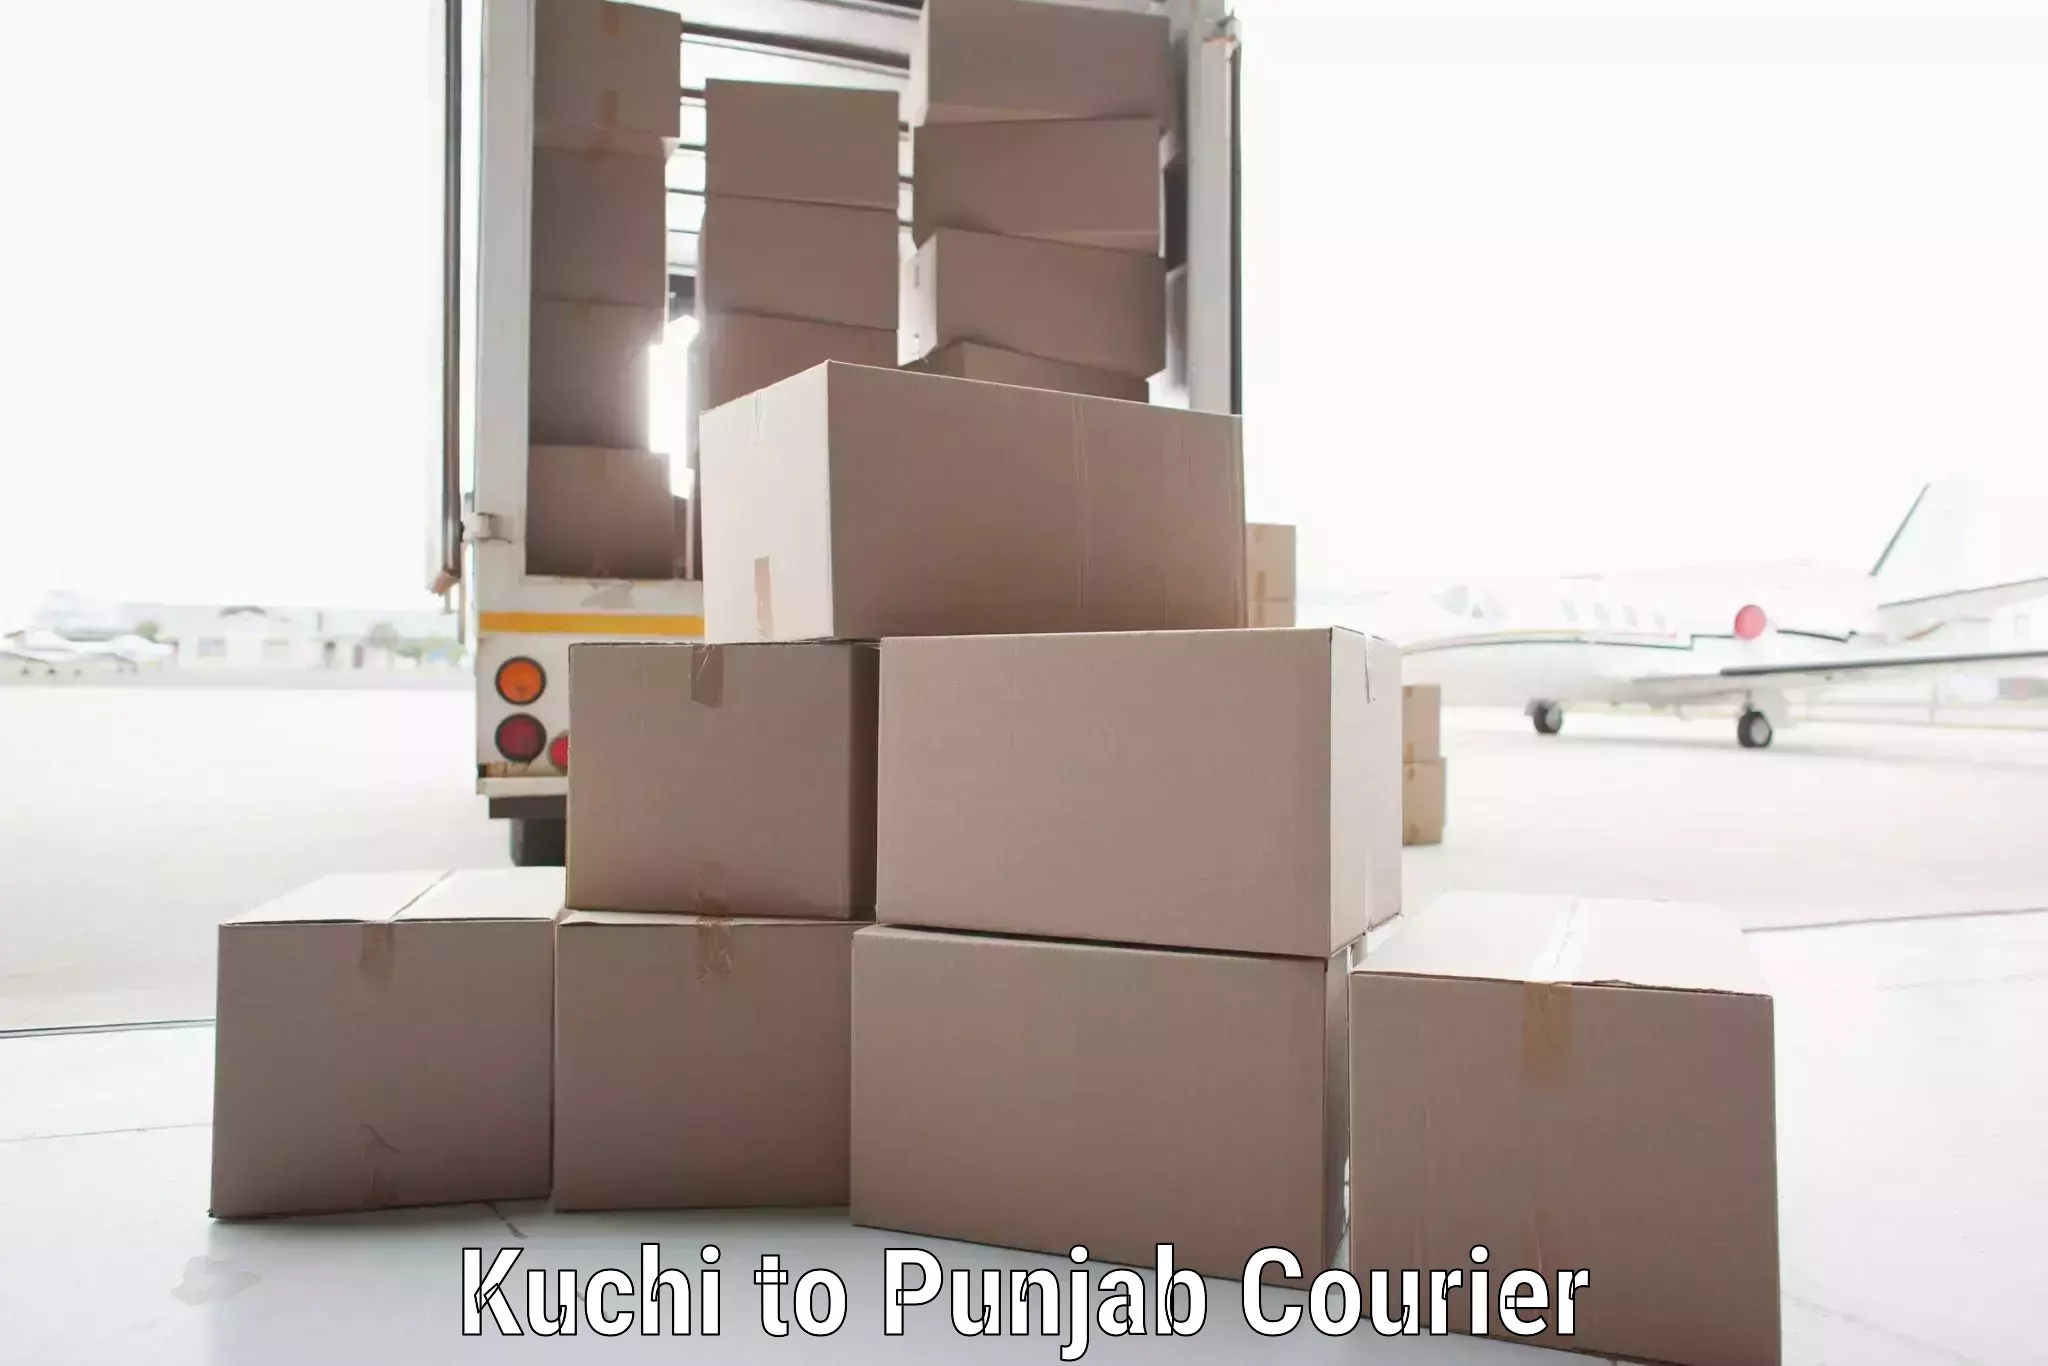 Personalized courier experiences Kuchi to Central University of Punjab Bathinda